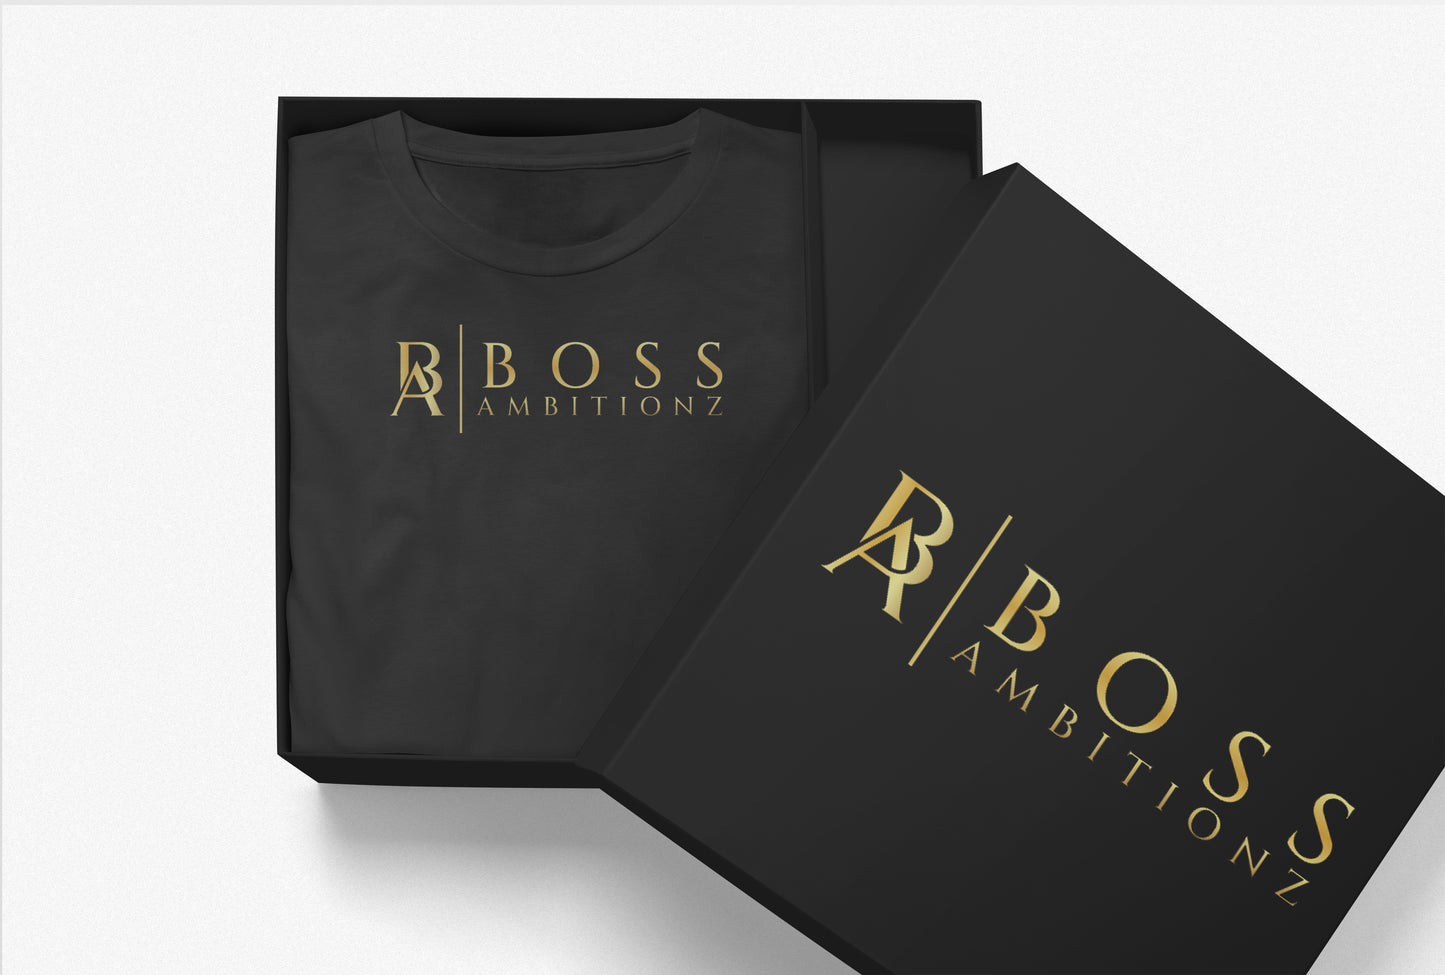 Boss Ambitionz $100 Fashion Gift Card - Unlock Style & Elegance - BossAmbitionz 100.00